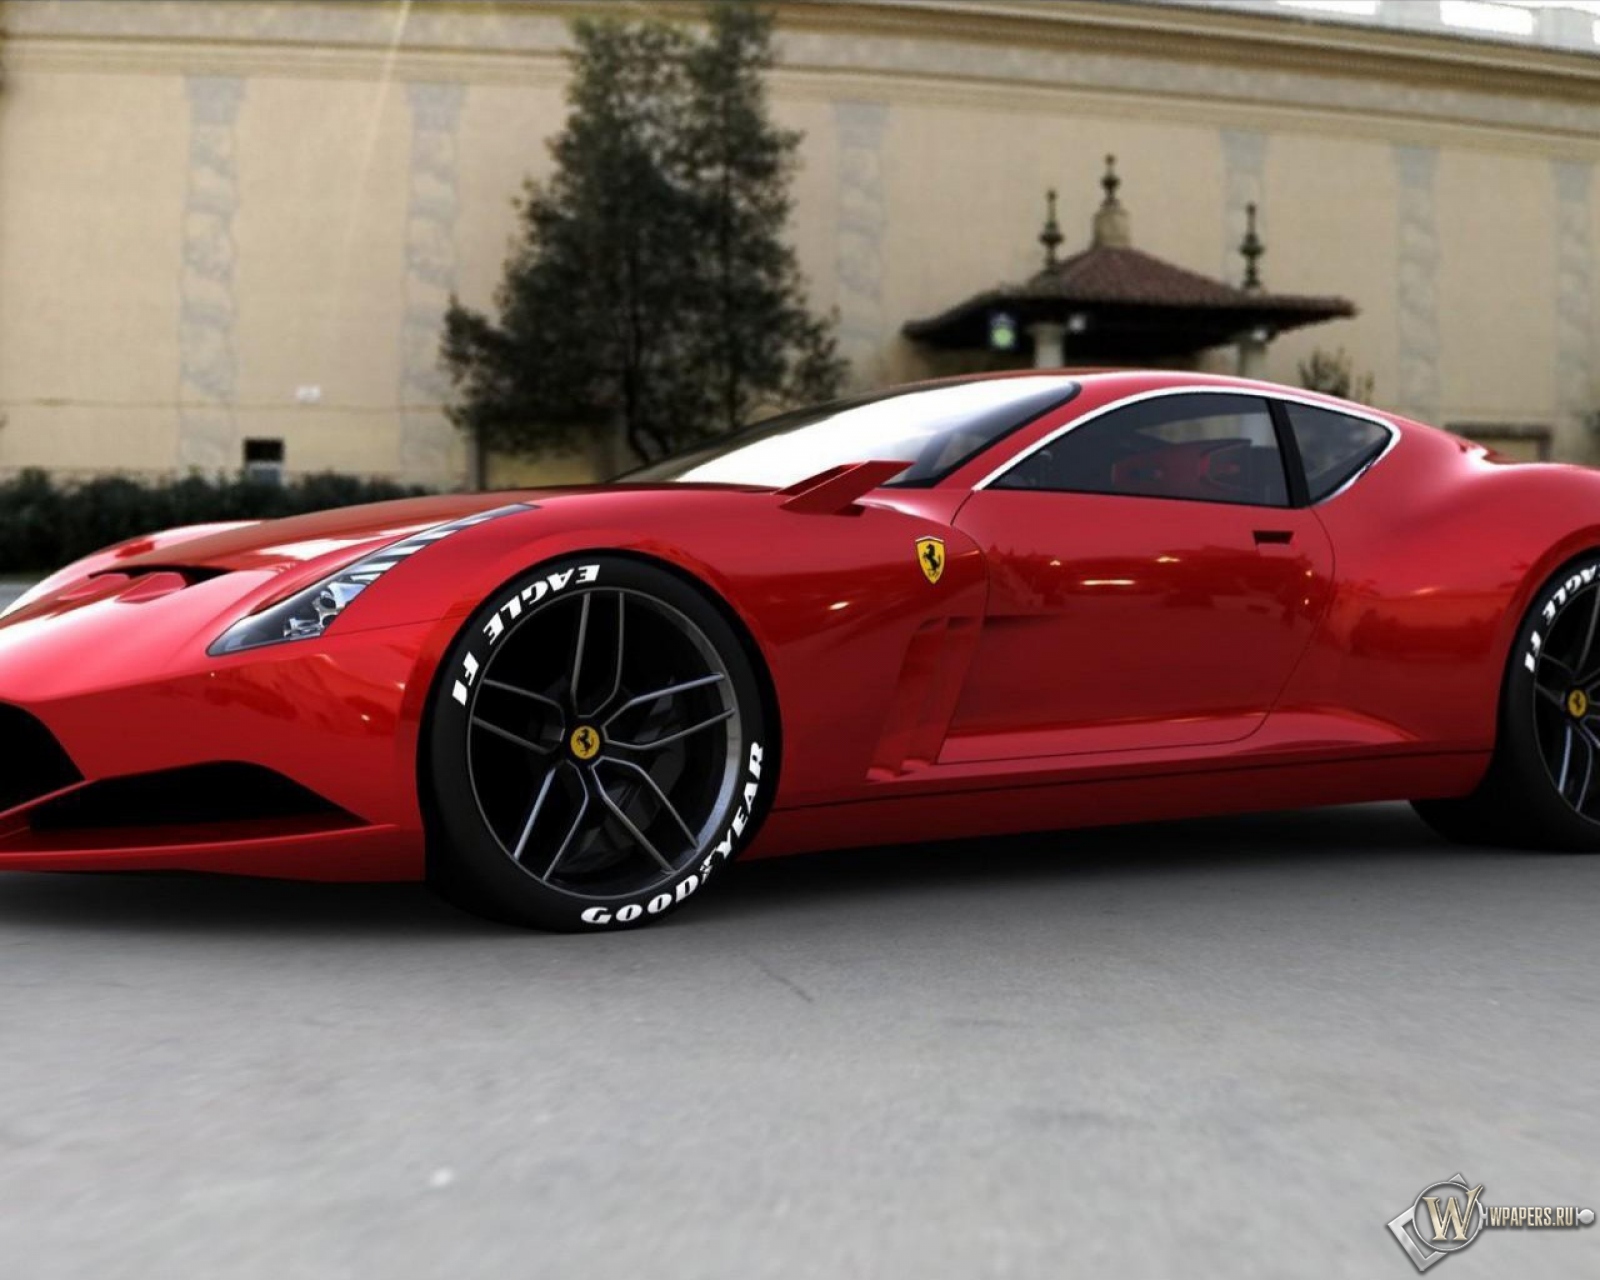 Ferrari-612-GTO-concept 1600x1280